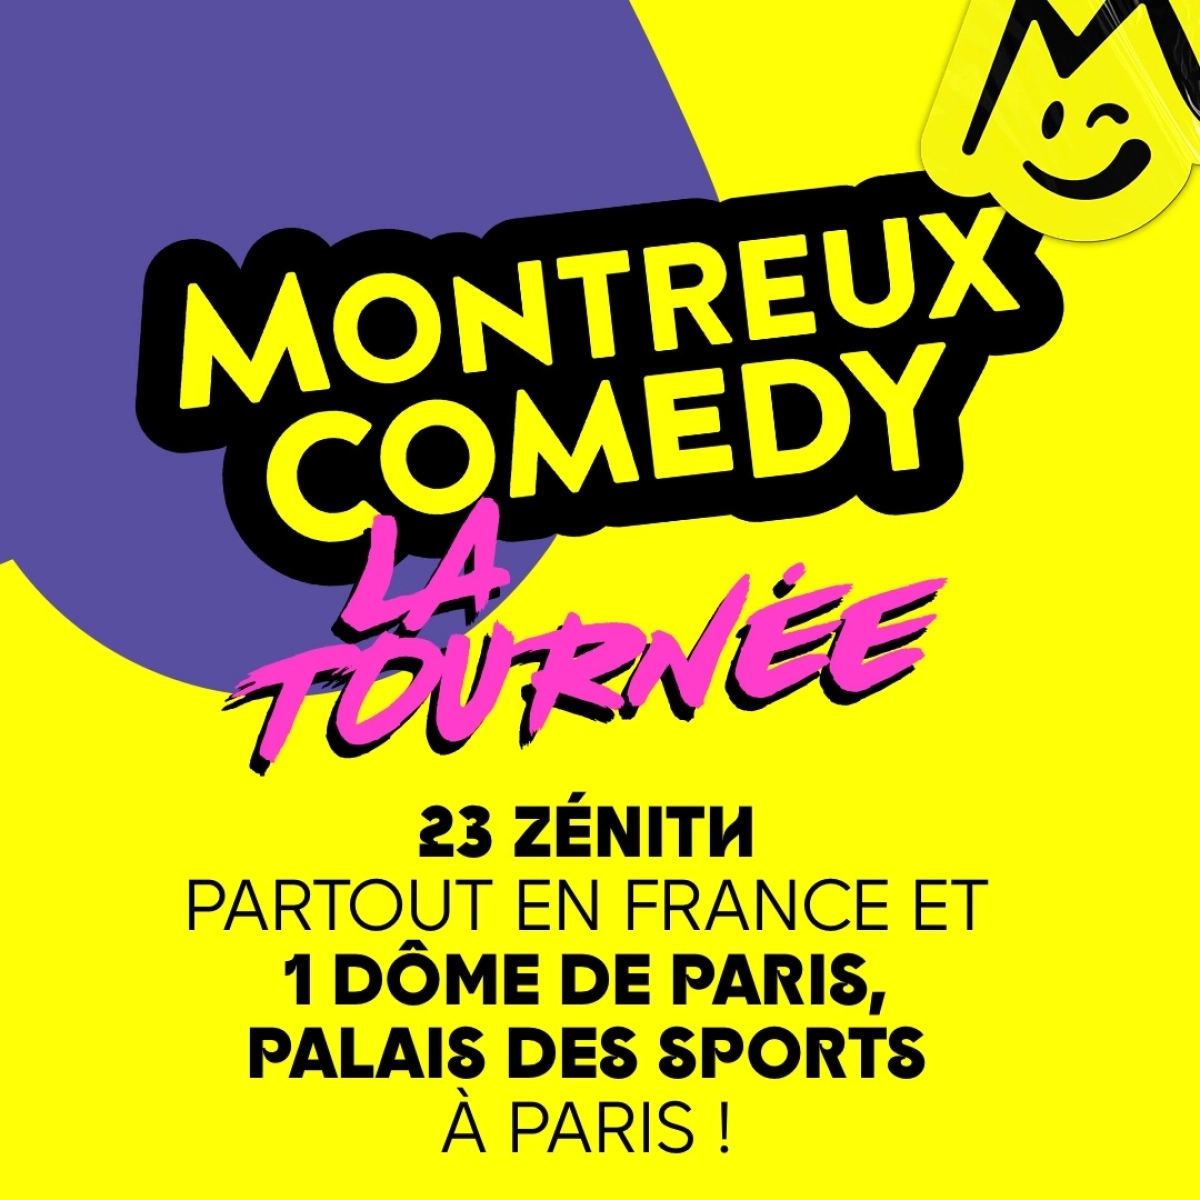 Montreux Comedy - La Tournée en Elispace Tickets